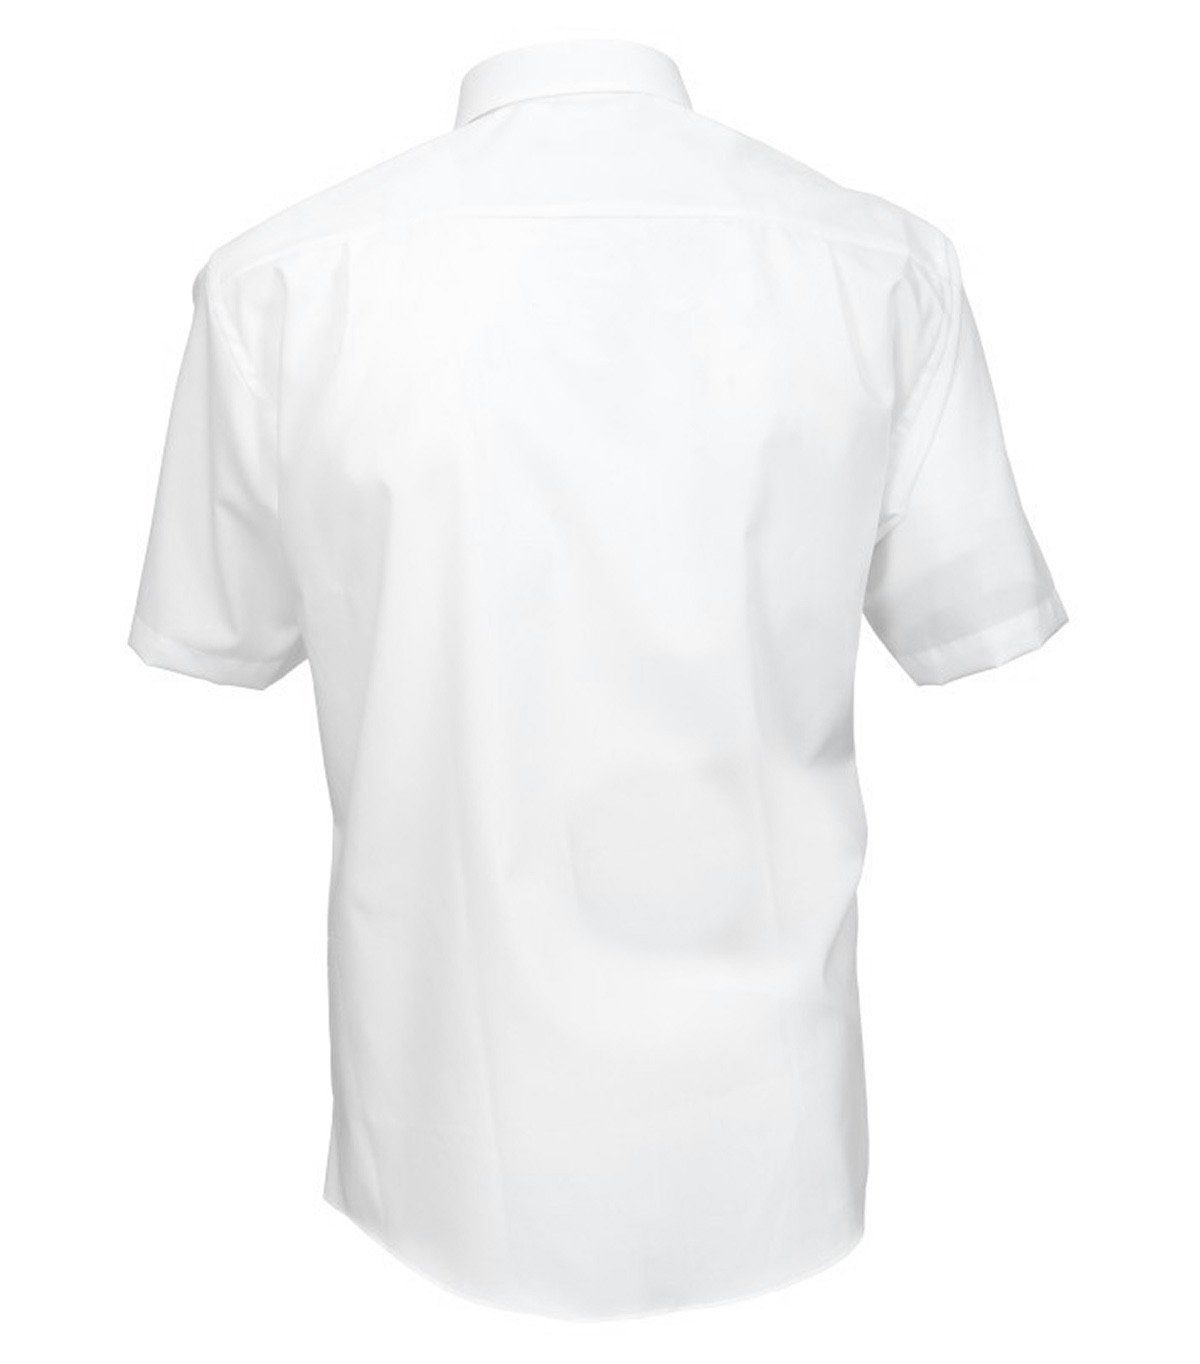 2x5 Trachtenhemd German Wear Hemd Biesen Halbarm Baumwolle Businesshemd Businesshemd GW1265-K-Kentkragen